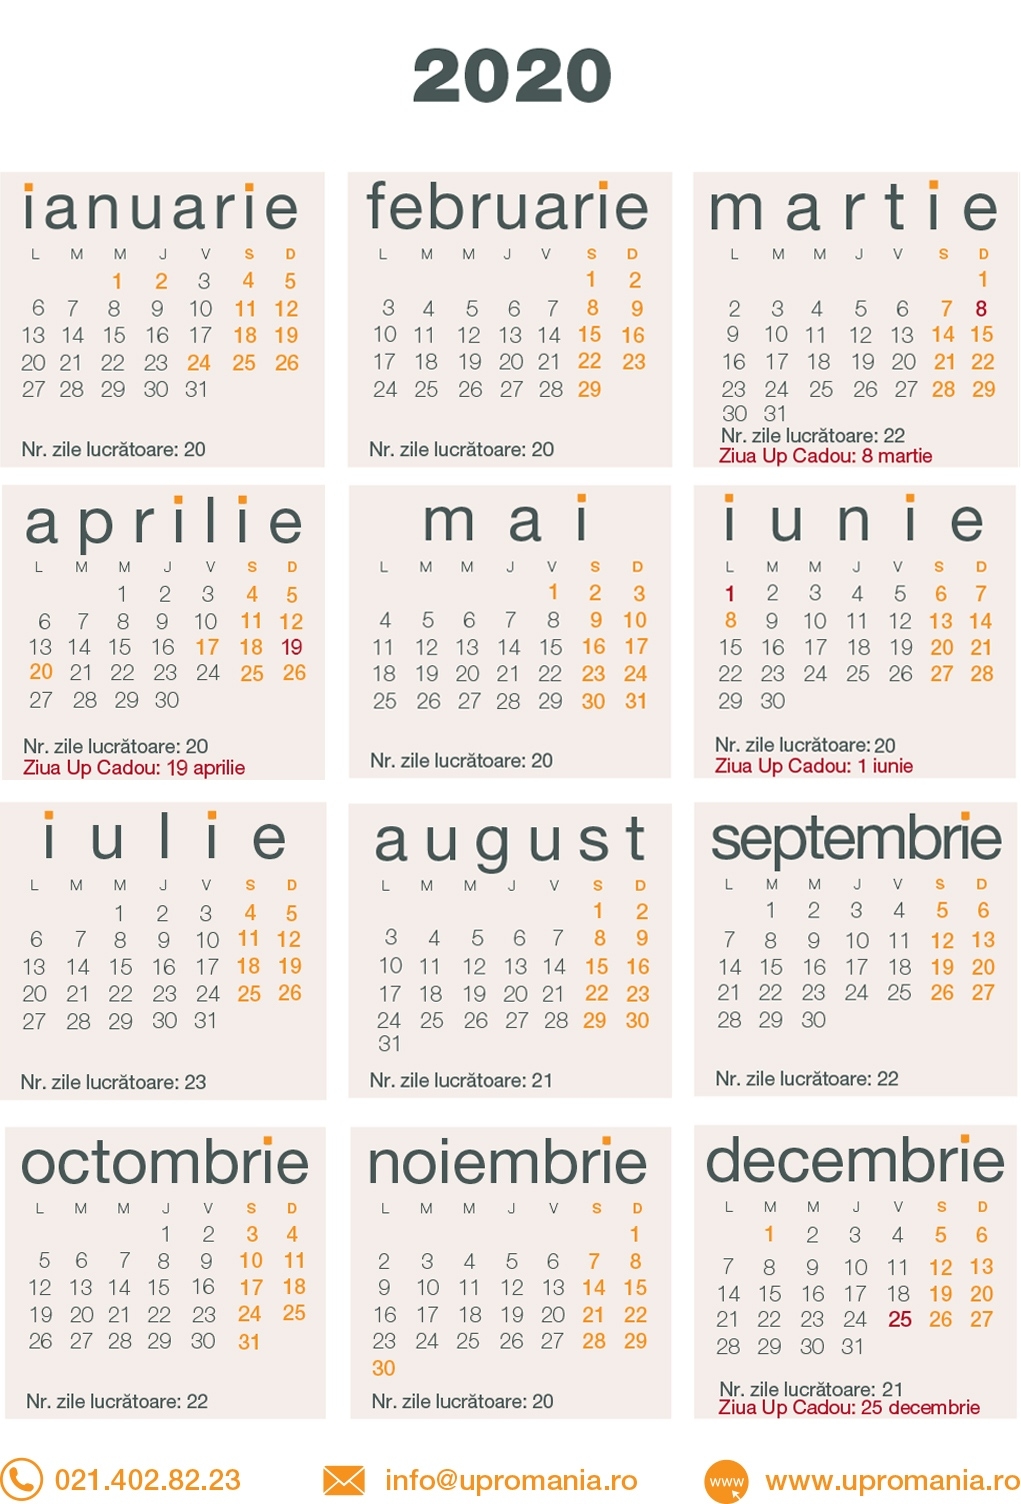 Calendar Zile Lucratoare 2021 | Up Romania Calendar Zile Lucratoare 2021